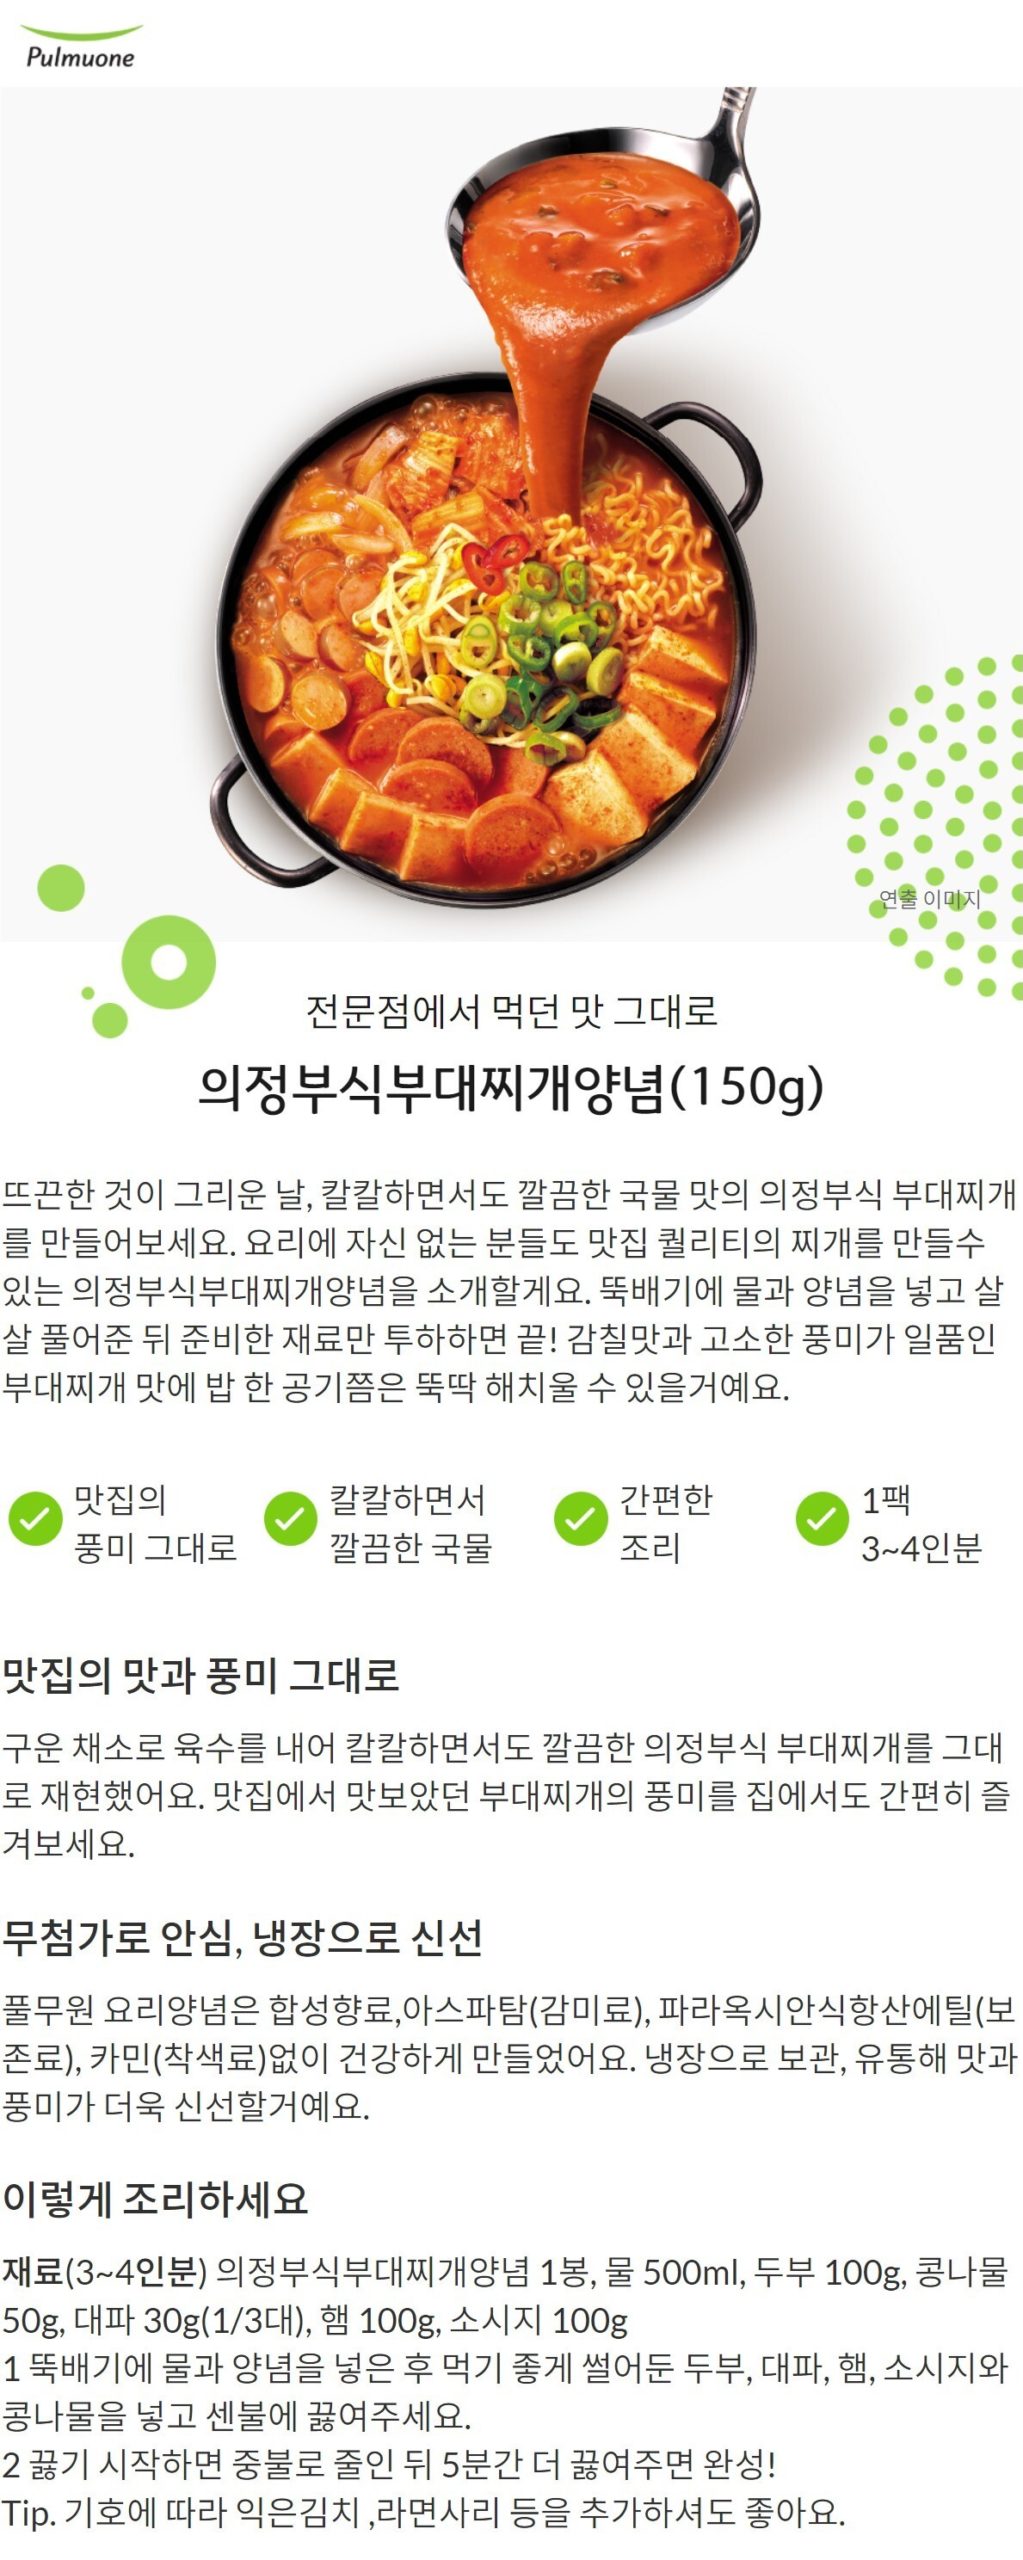 韓國食品-[圃木園] 議政府式部隊鍋醬 150g